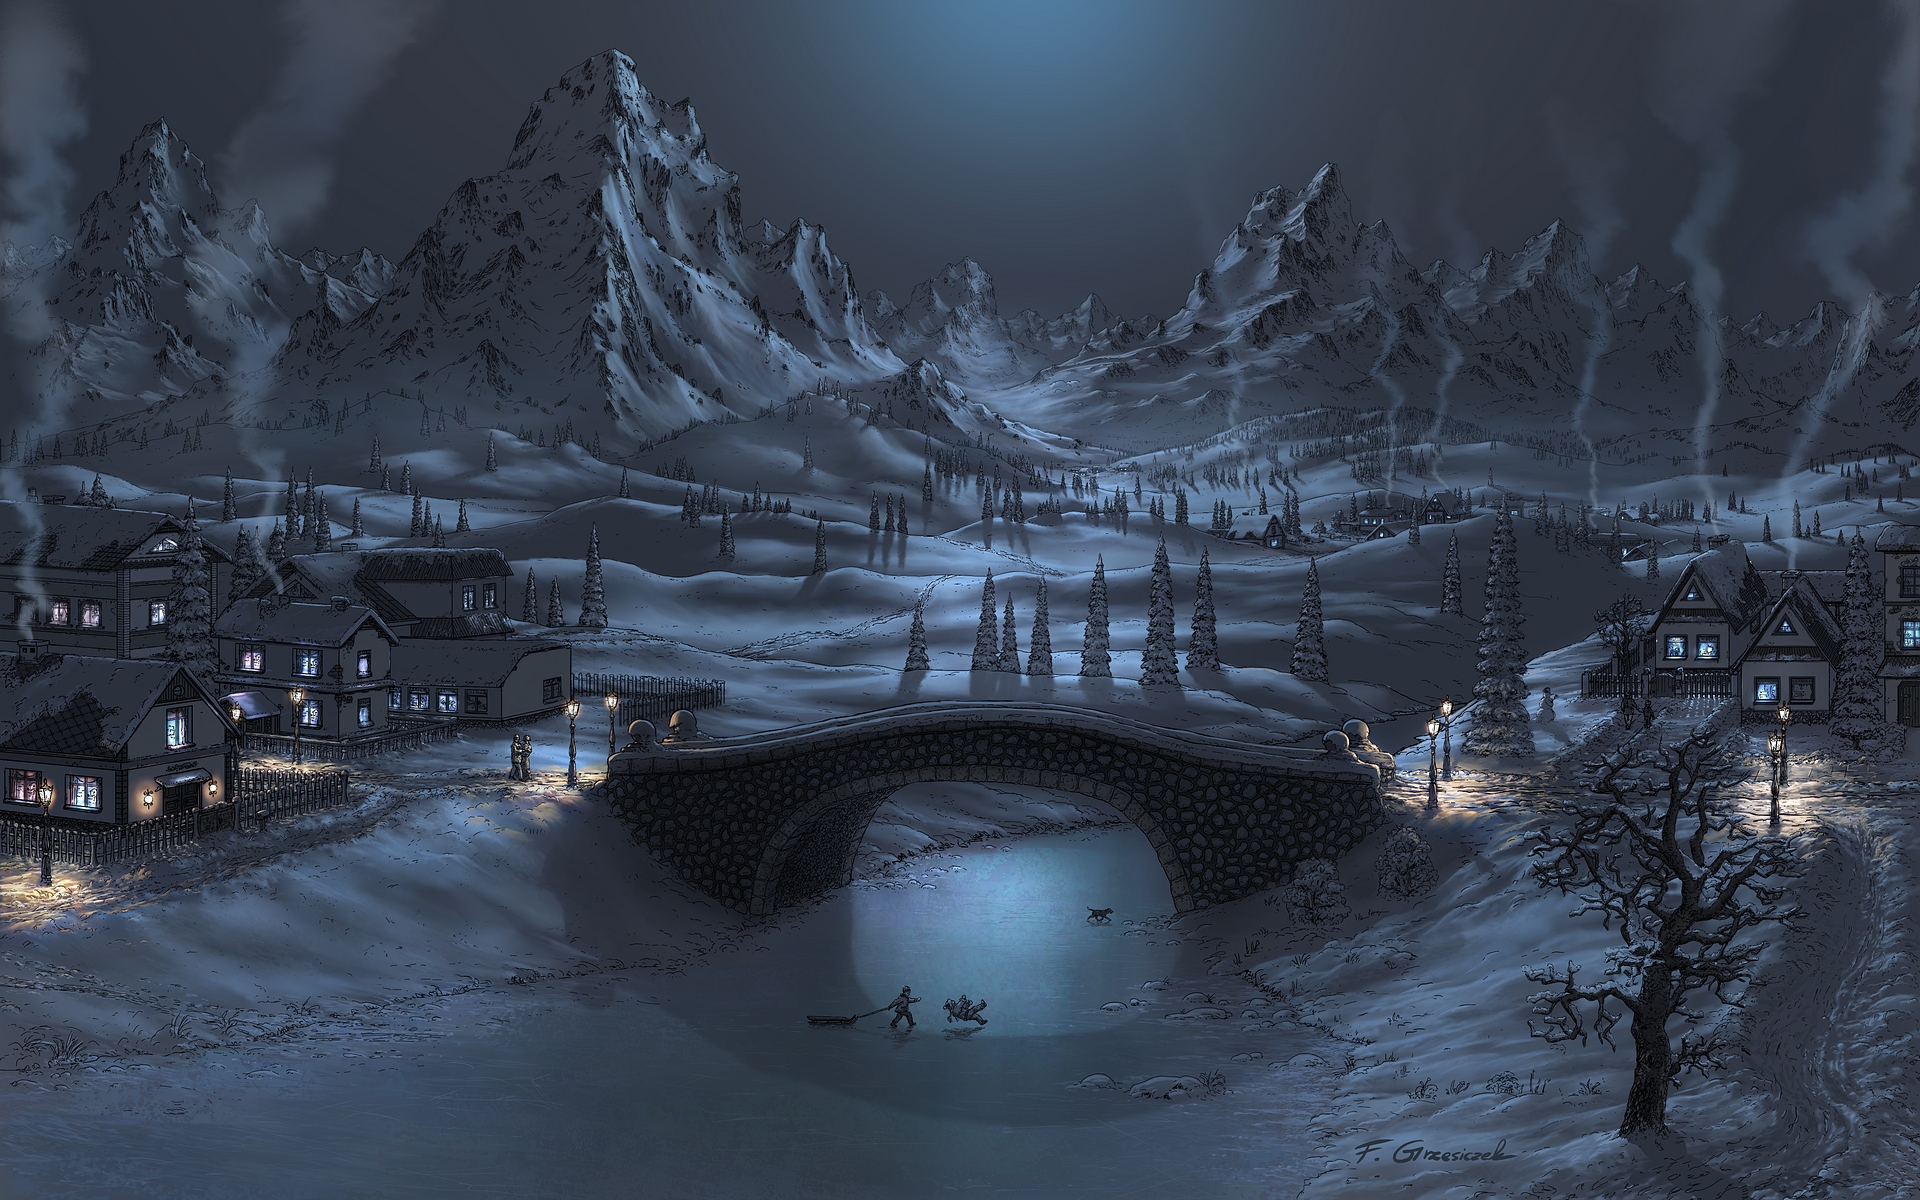 Bridge in winter by Fel-X on DeviantArt